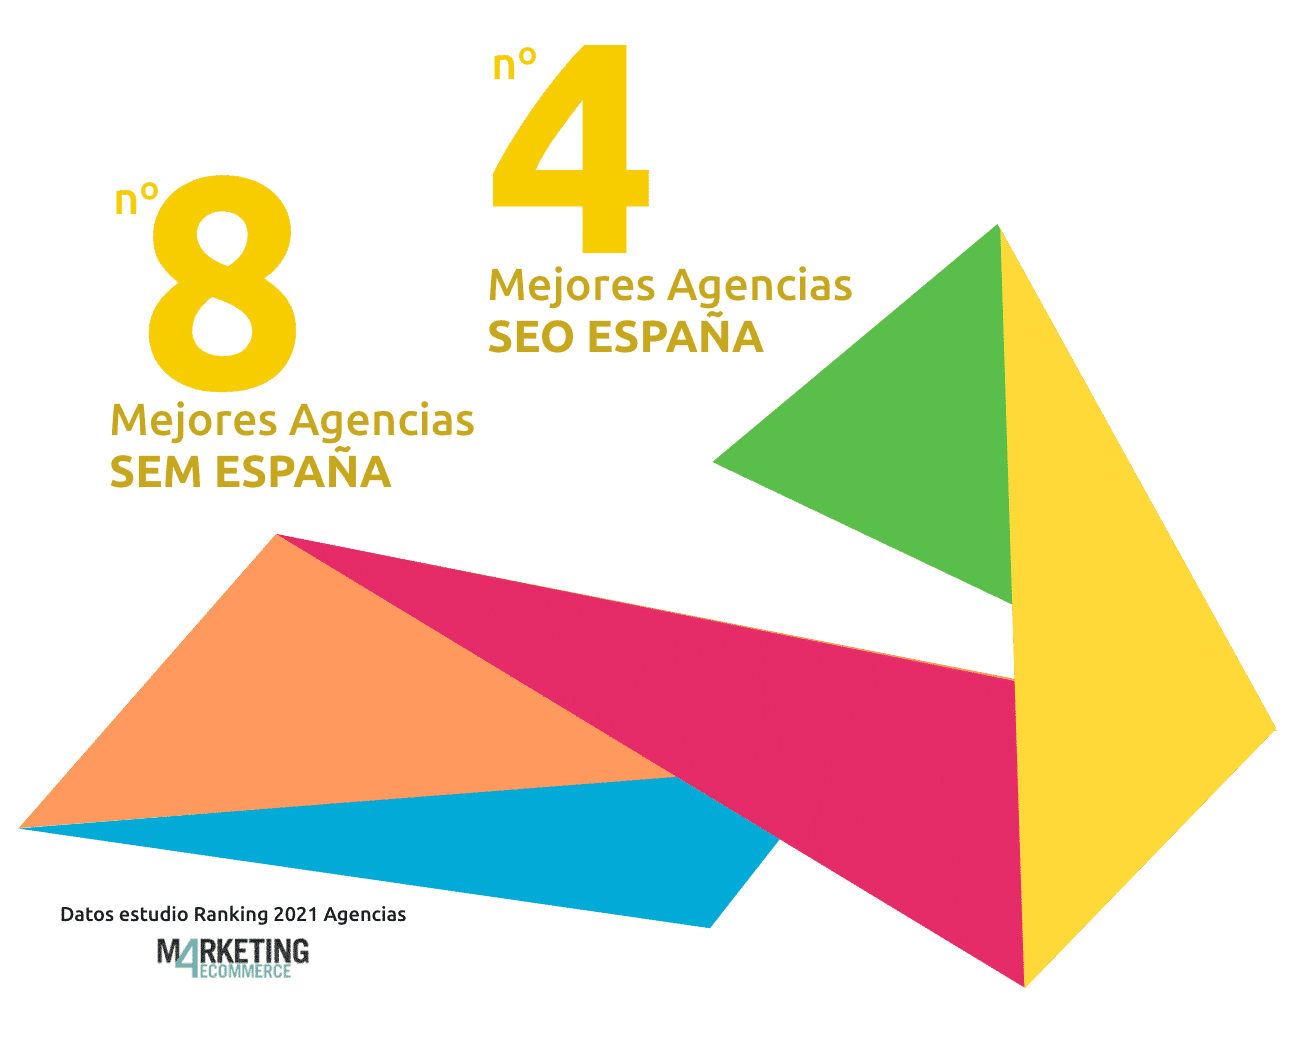 Idento, Agencia Marketing Digital, entre las mejores agencias SEO y SEM de España